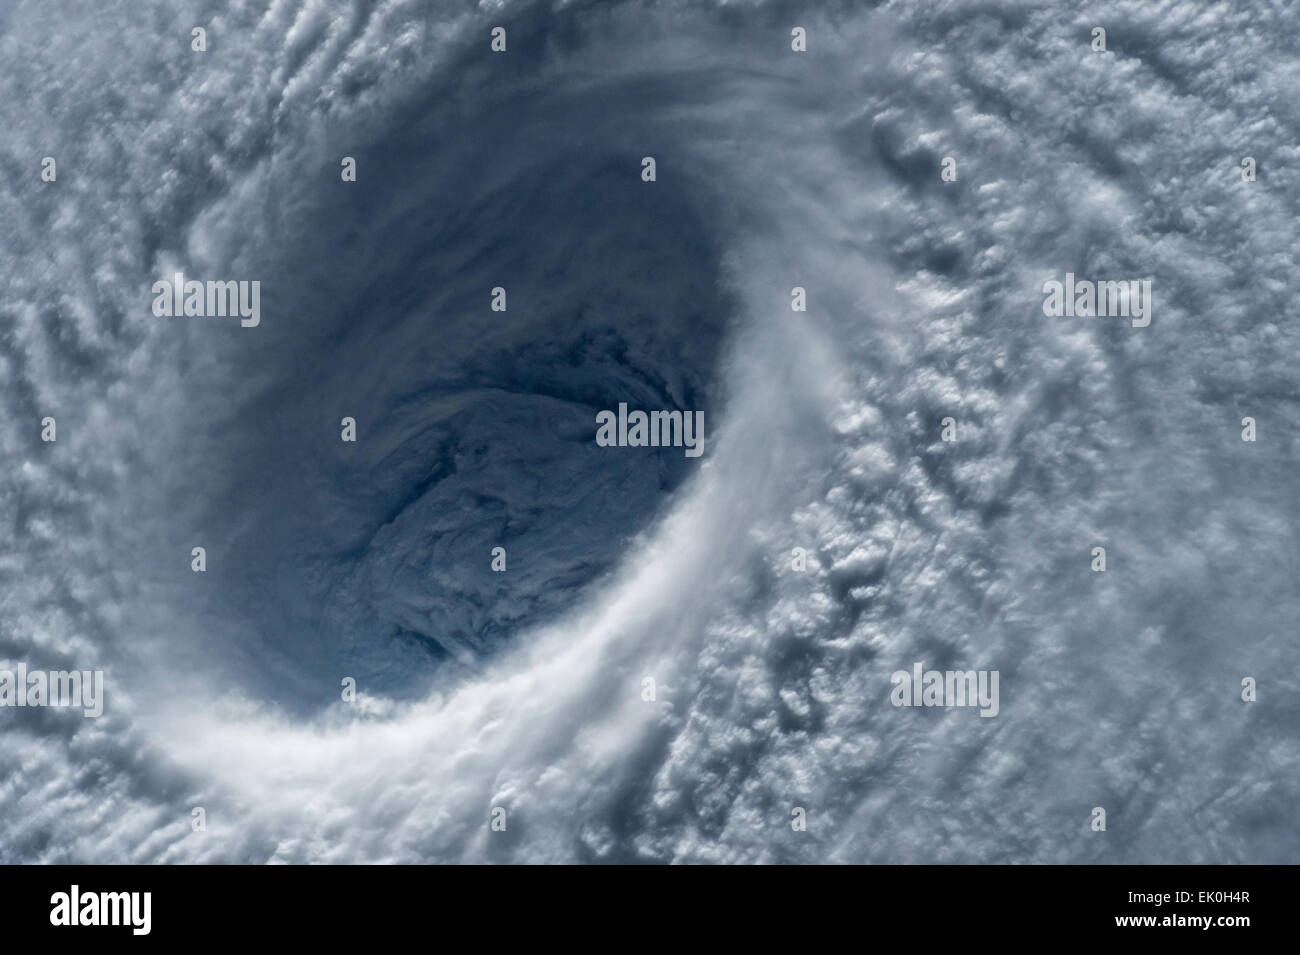 Vista dalla stazione spaziale internazionale del massiccio di categoria 5 Typhoon Maysak occhio come si avvicina le isole filippine il 31 marzo 2015. Il super tifone è previsto a terra il prossimo fine settimana di Pasqua. Foto Stock